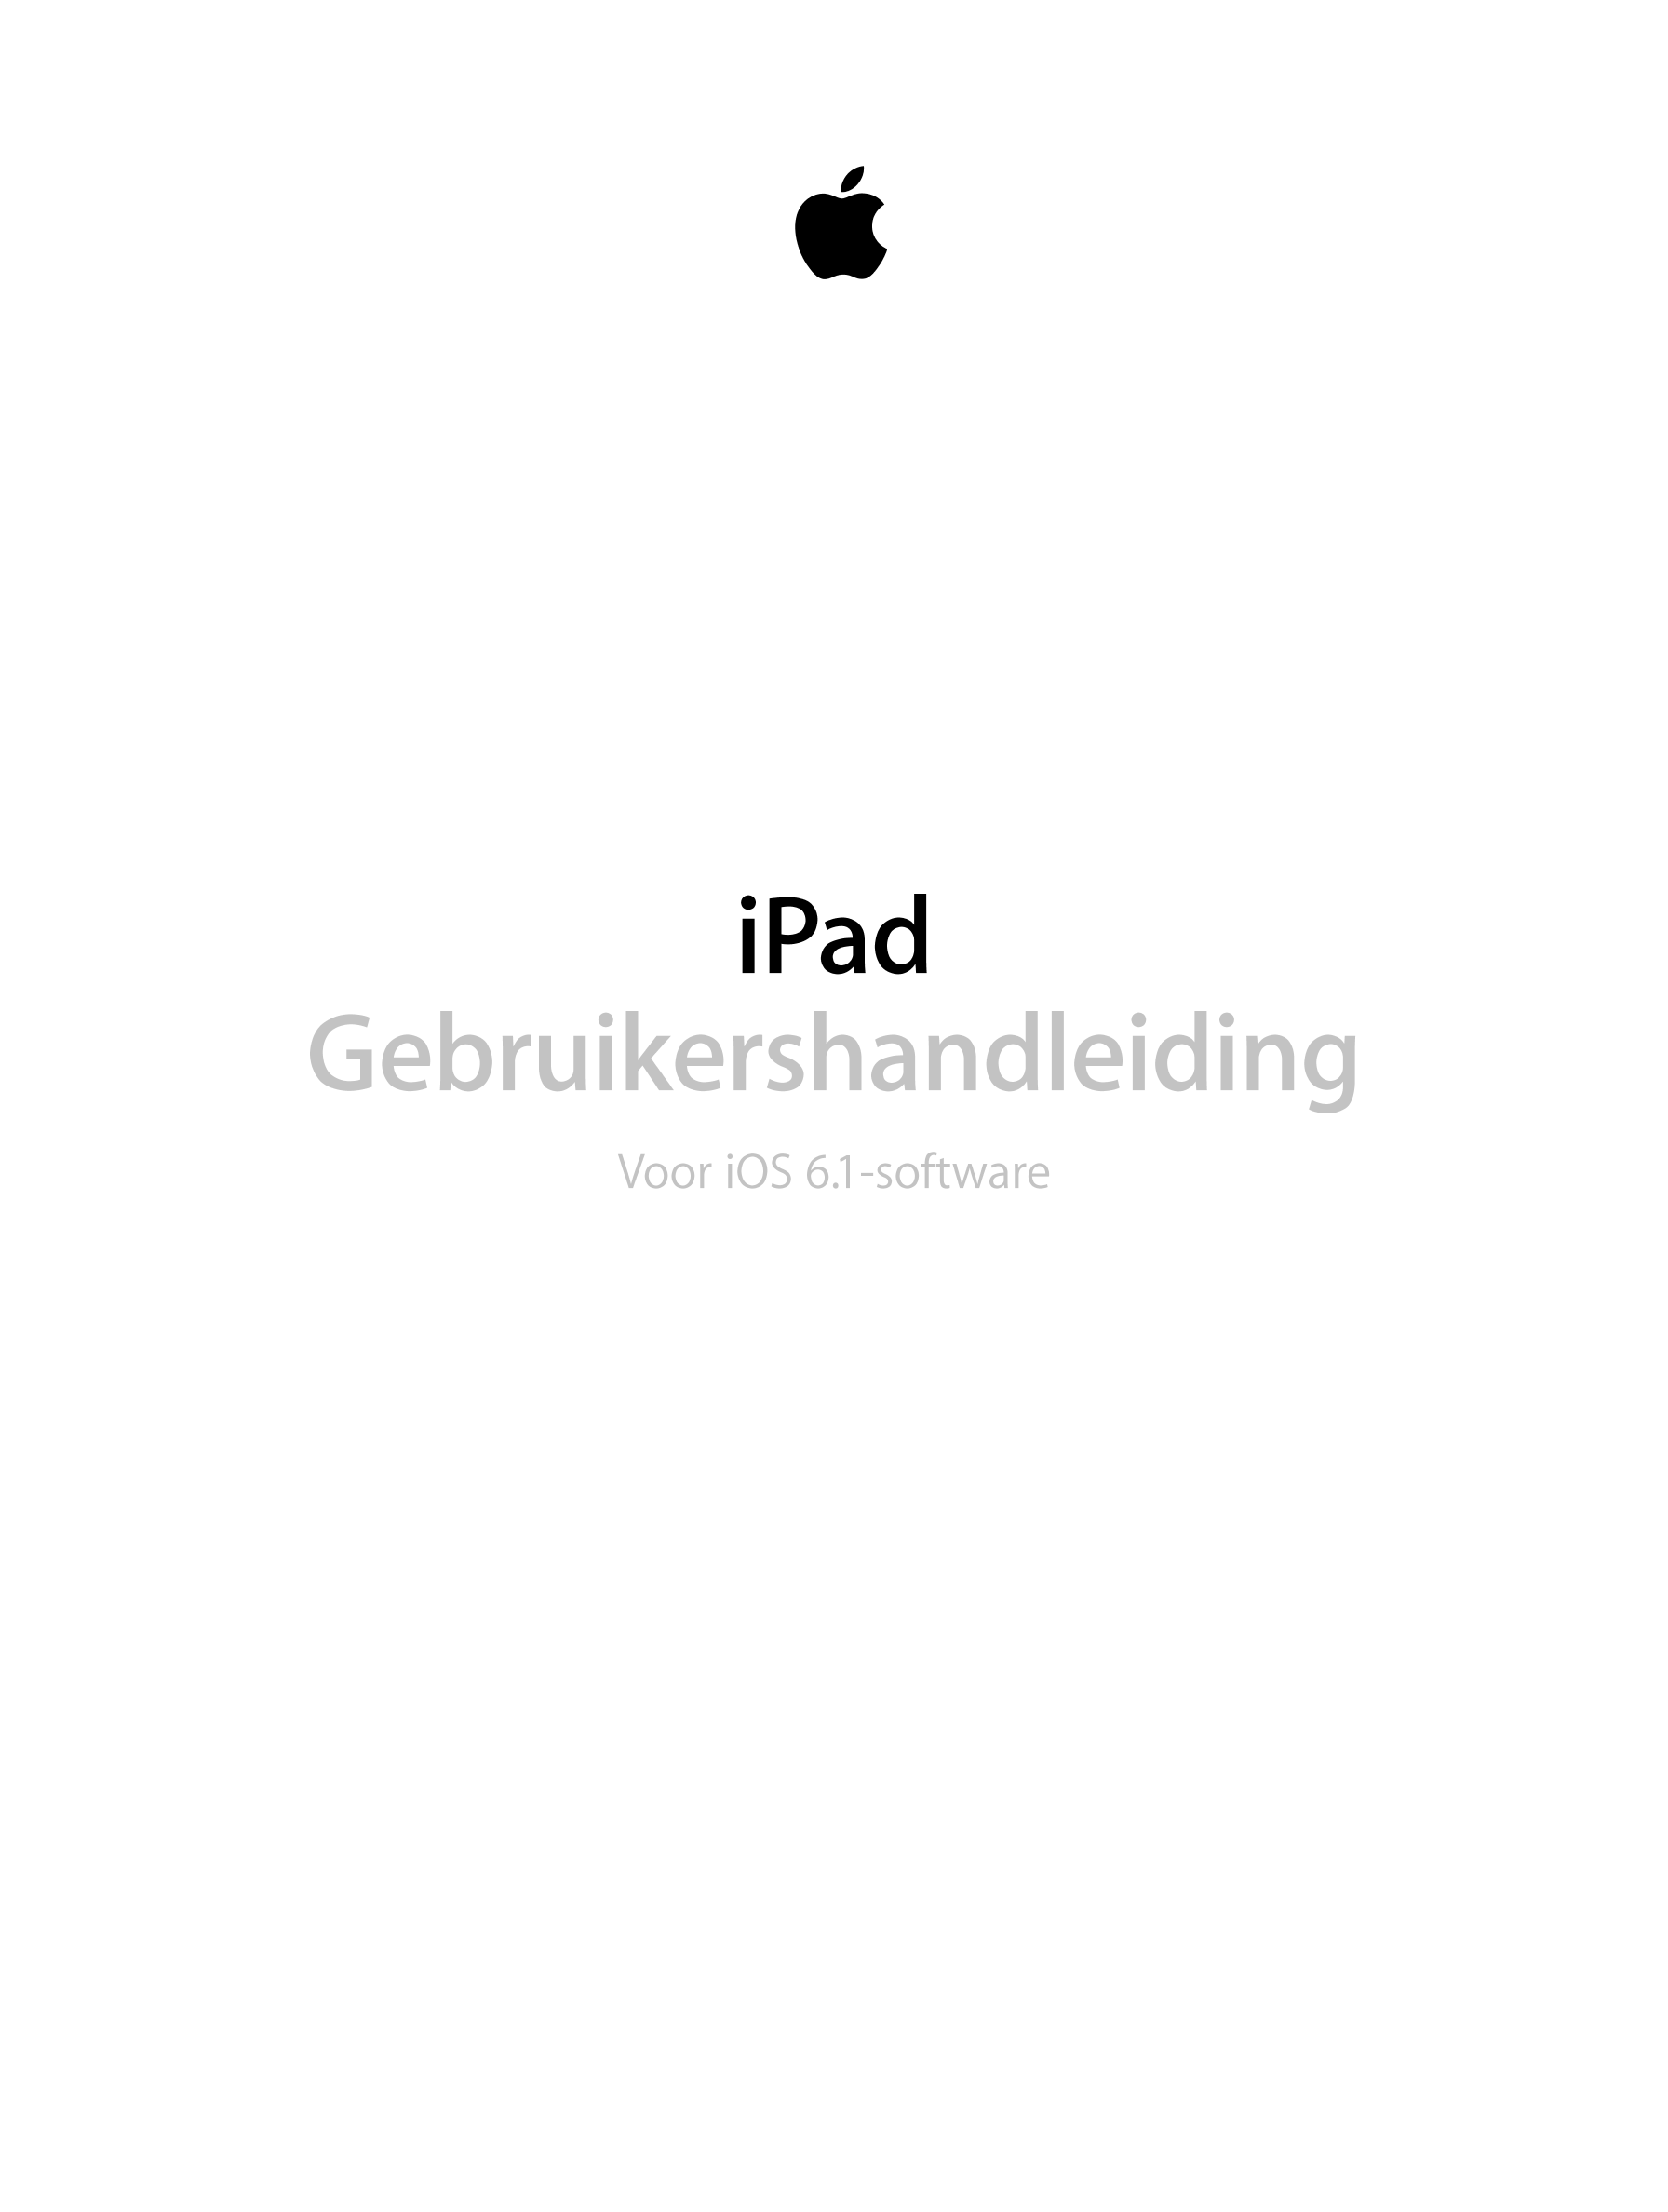 iPad
Gebruikershandleiding
Voor iOS 6.1-software